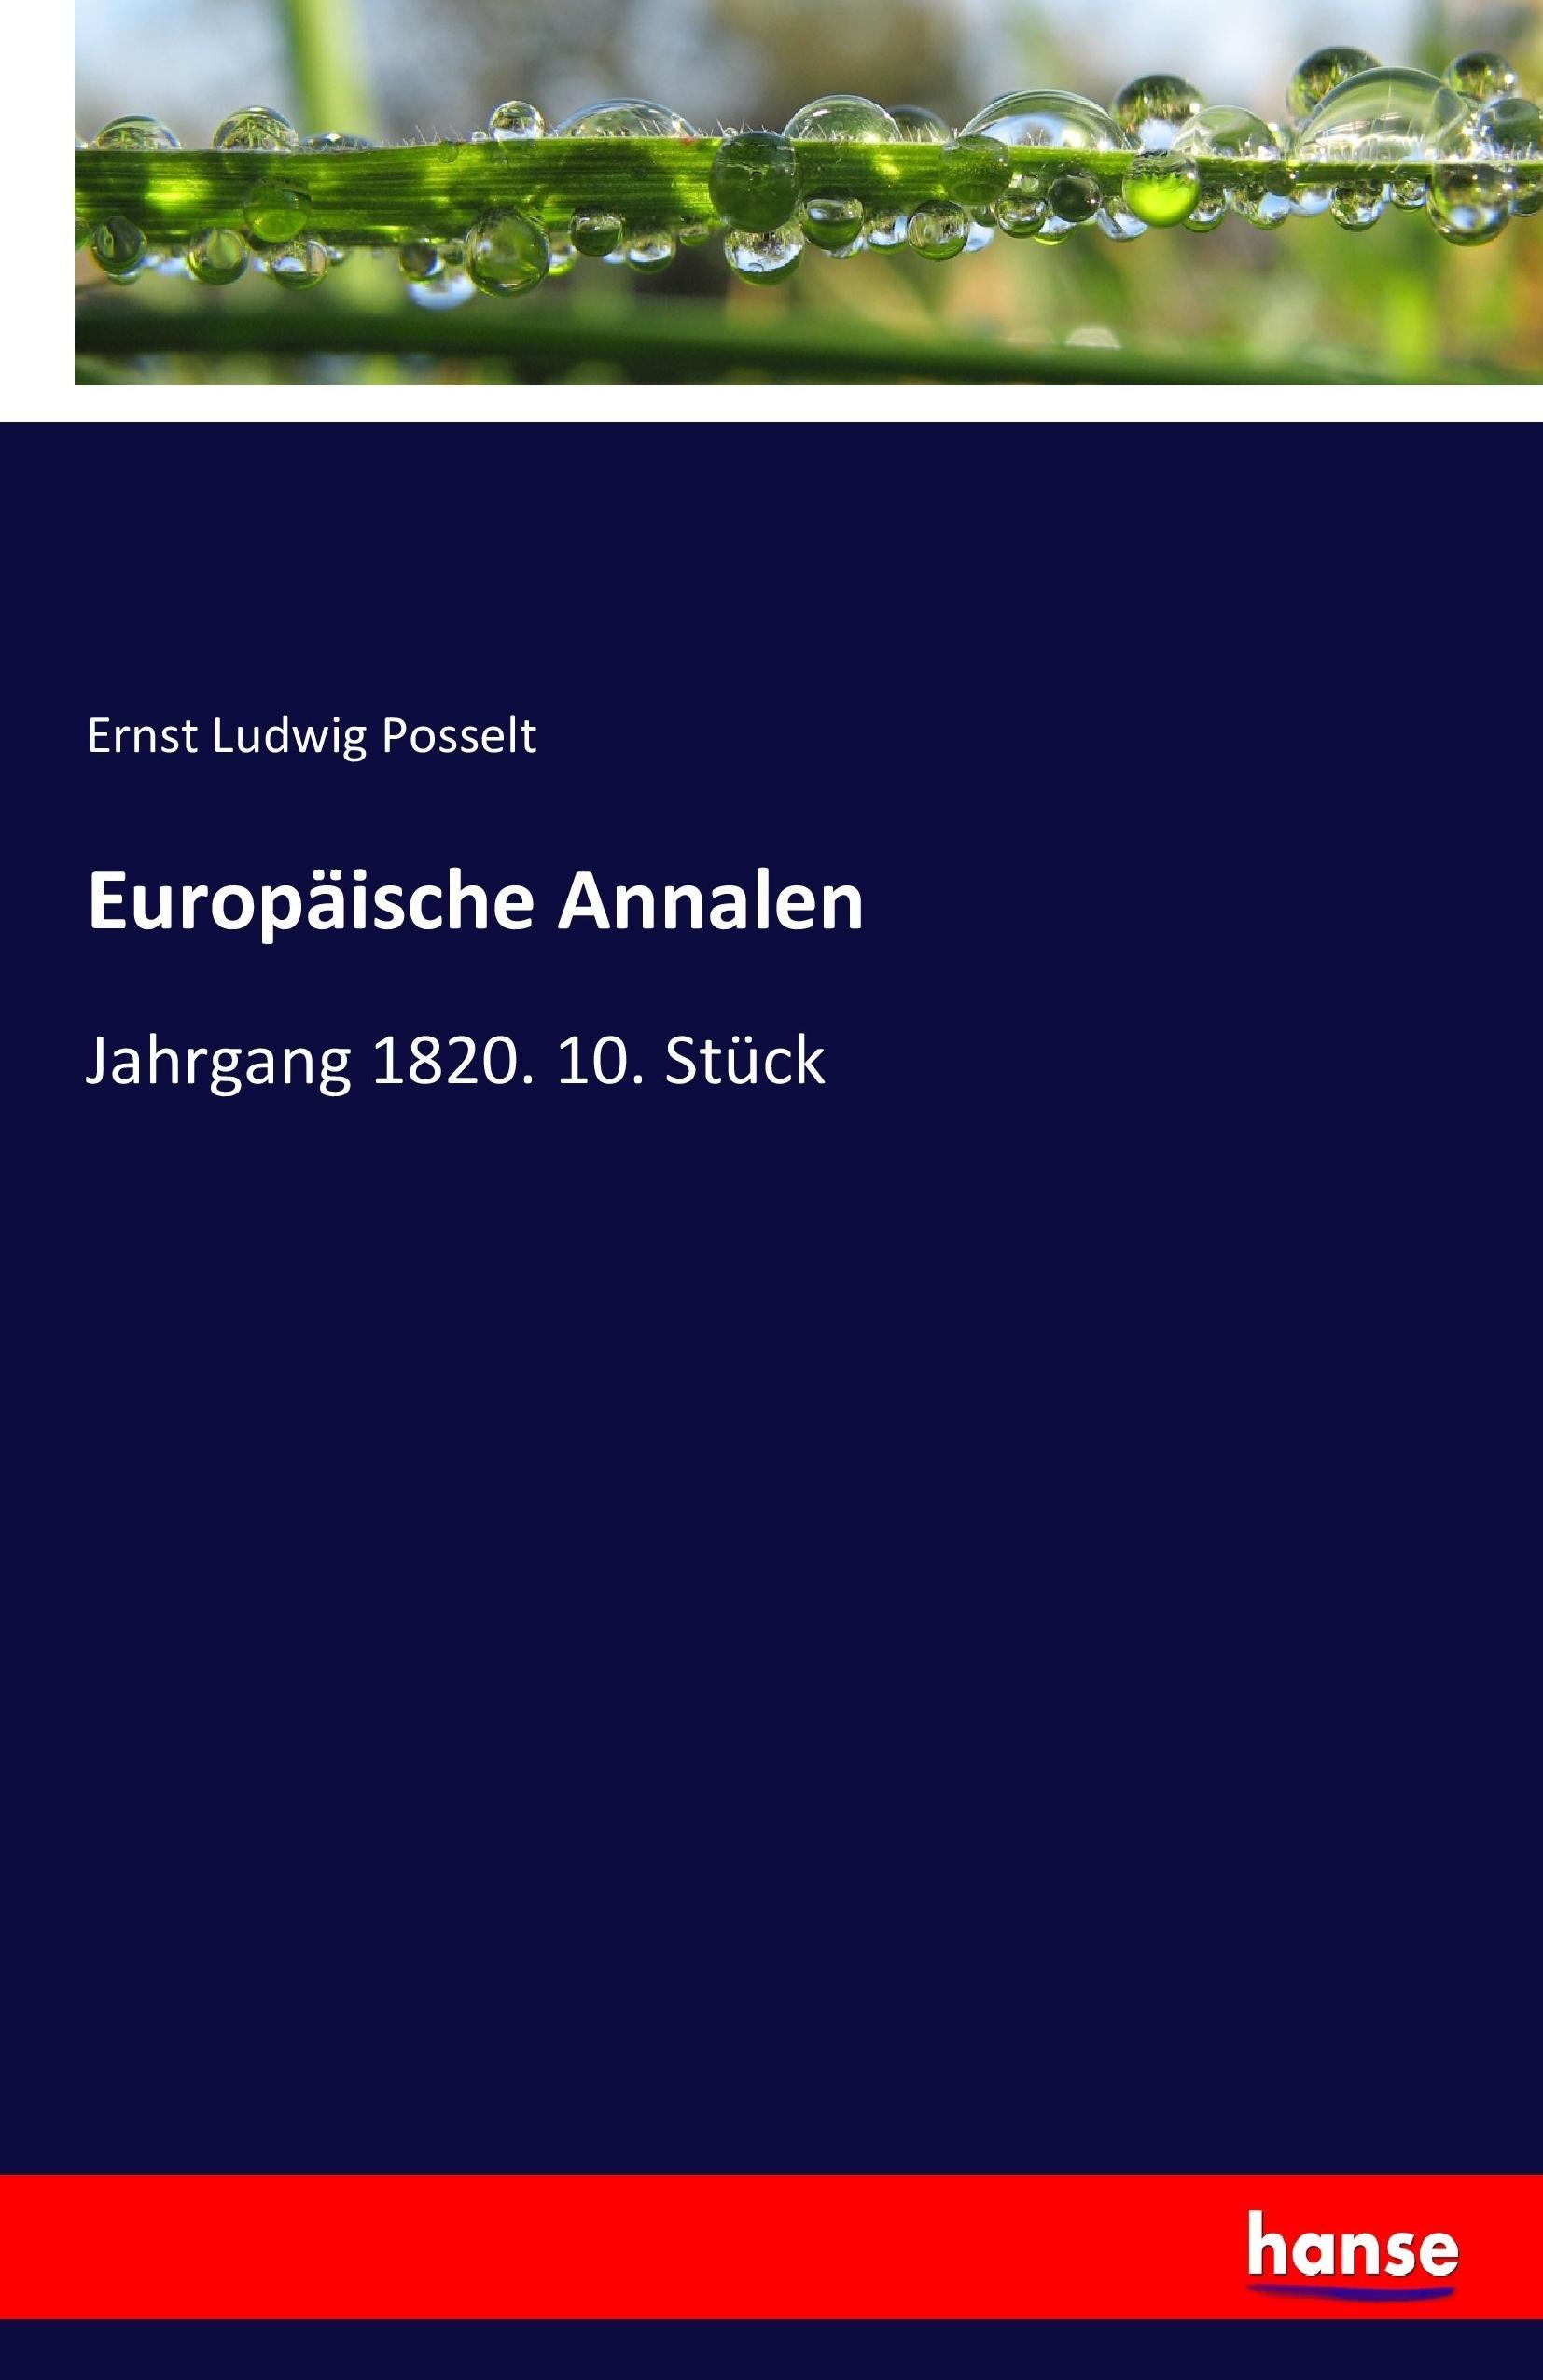 Europäische Annalen | Jahrgang 1820. 10. Stück | Ernst Ludwig Posselt | Taschenbuch | Paperback | 136 S. | Deutsch | 2017 | hansebooks | EAN 9783744684637 - Posselt, Ernst Ludwig